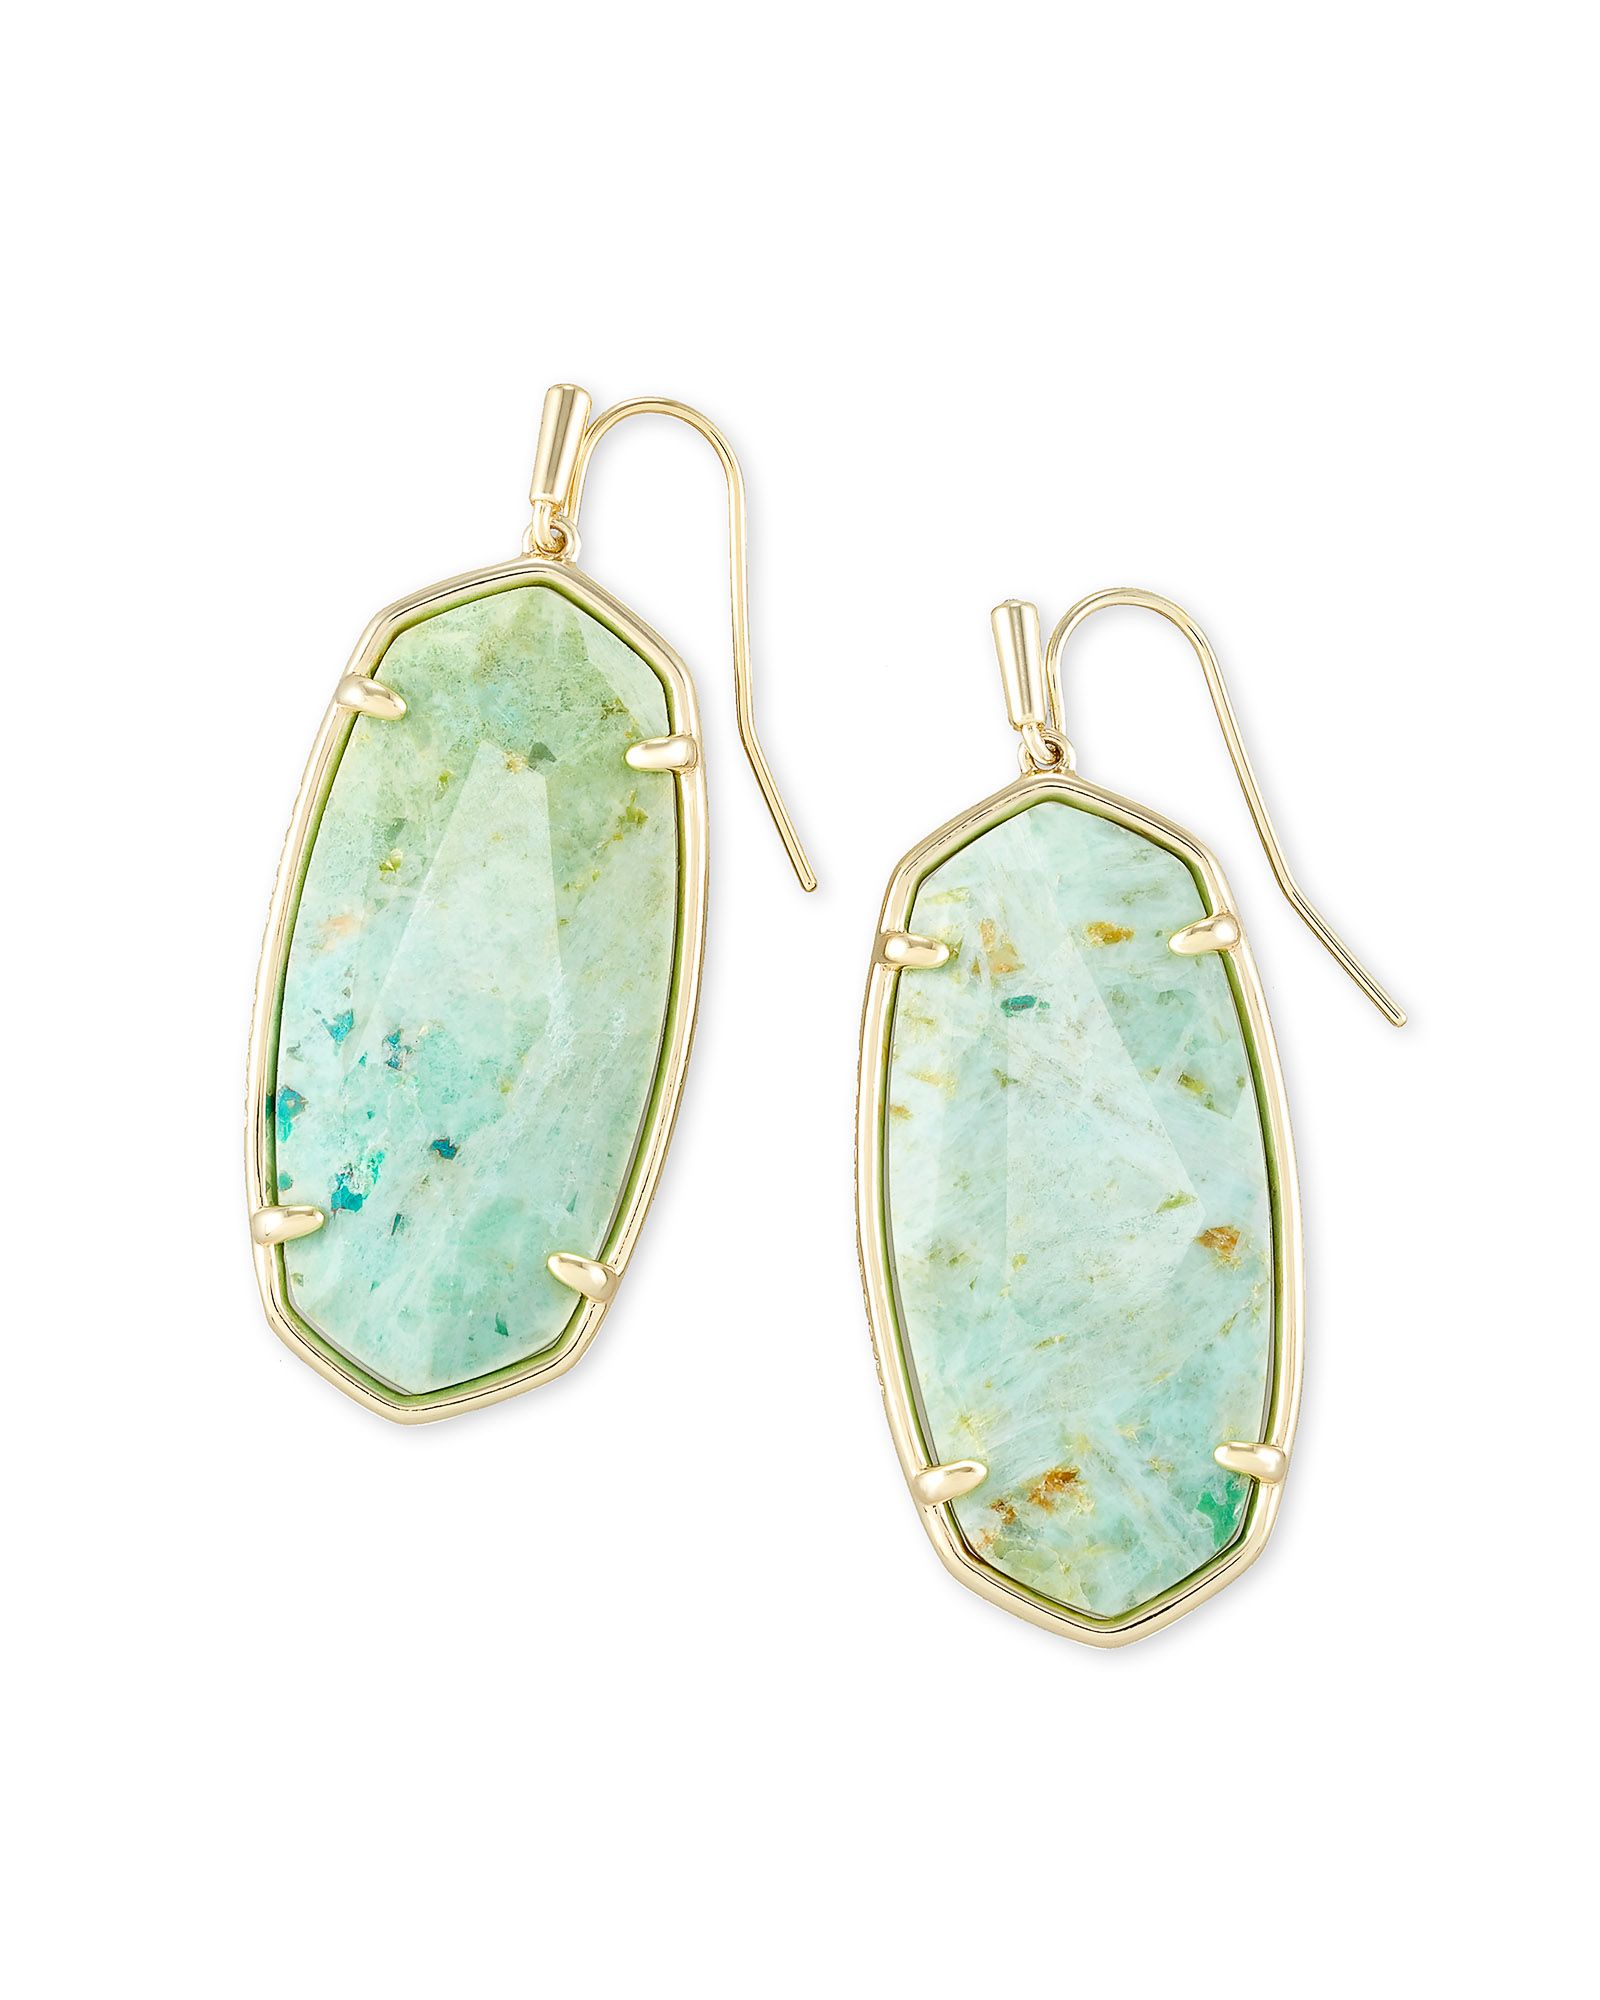 Faceted Elle Gold Drop Earrings in Sea Green Chrysocolla | Kendra Scott